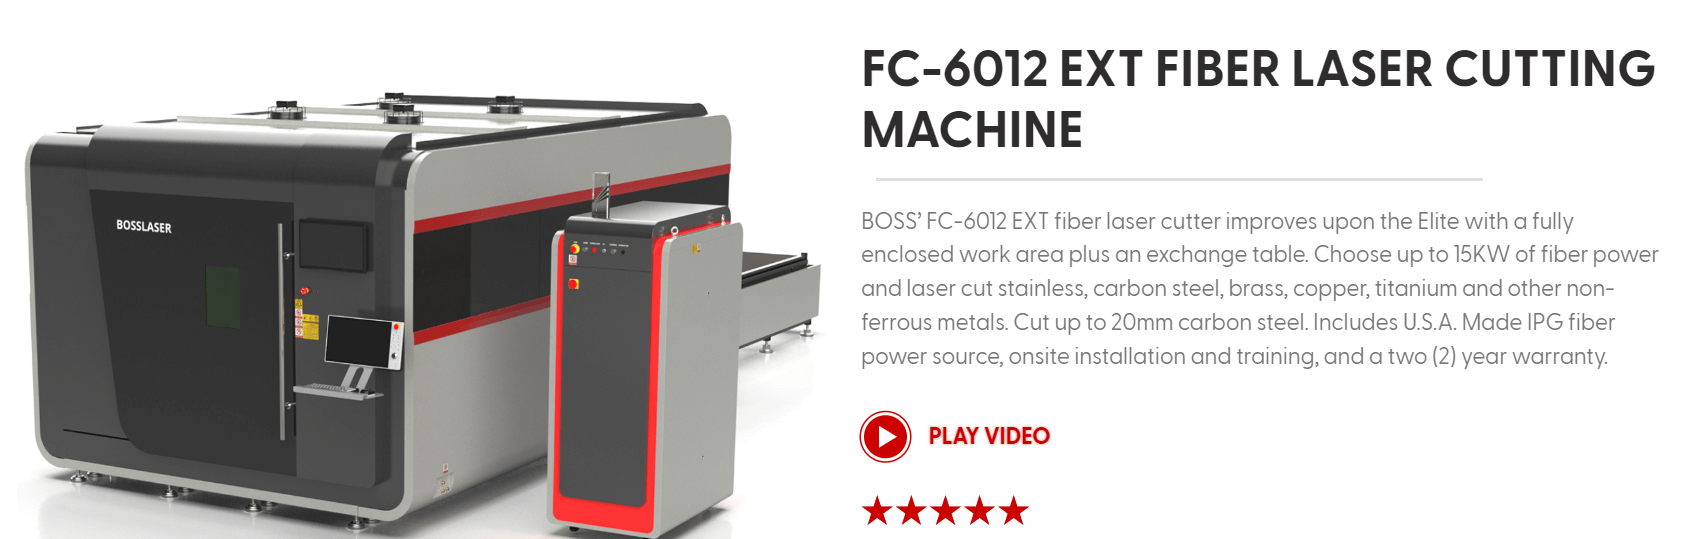 FC-6012 EXT laser cutter